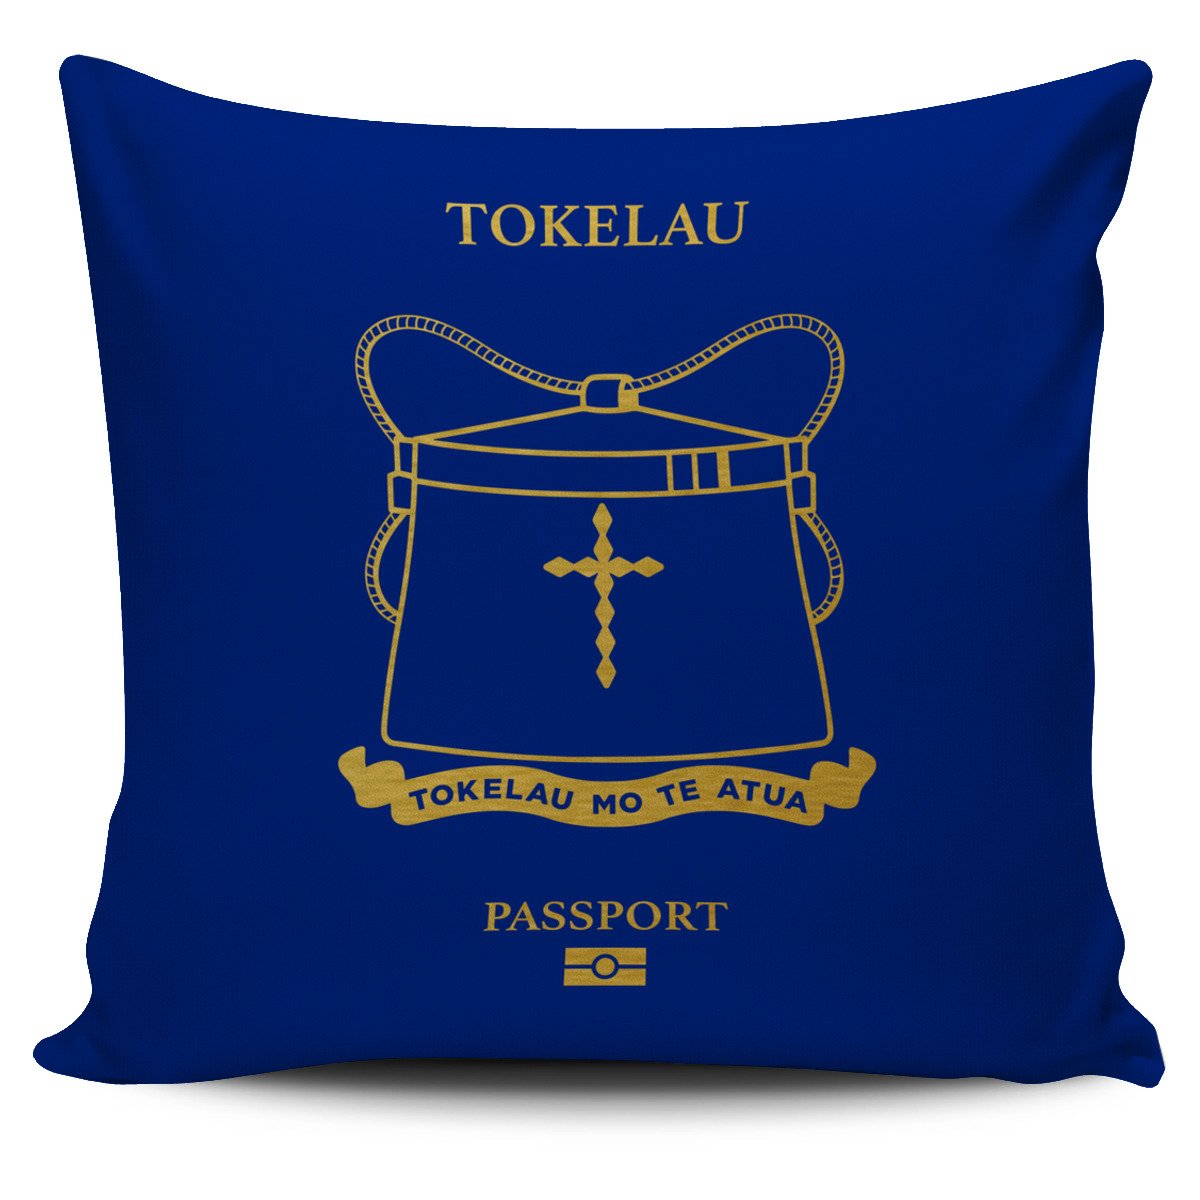 Tokelau Pillow Cover - Passport Version Tokelau One Size Blue - Polynesian Pride